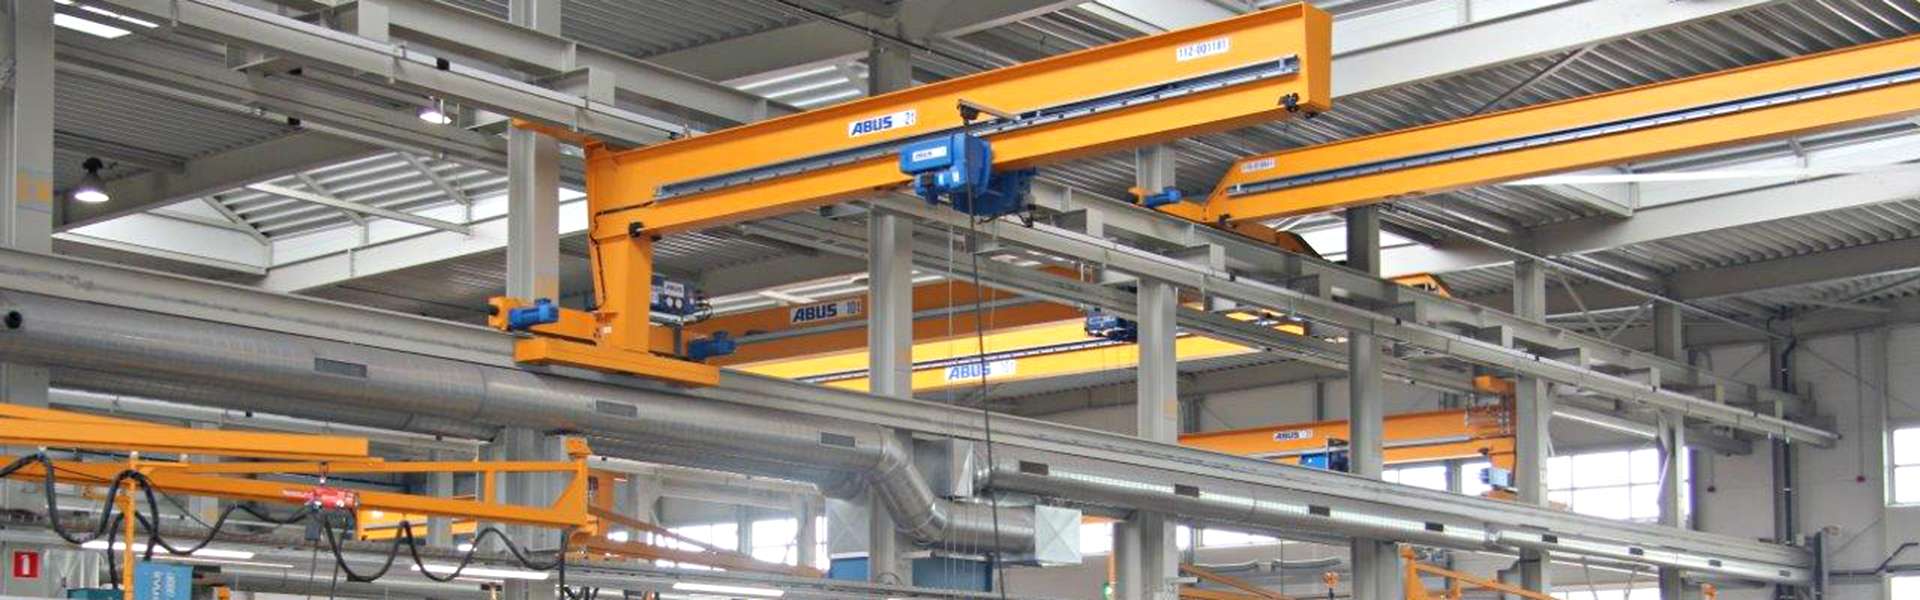 一站式服务：荷兰钢铁建筑公司的安博起重系统